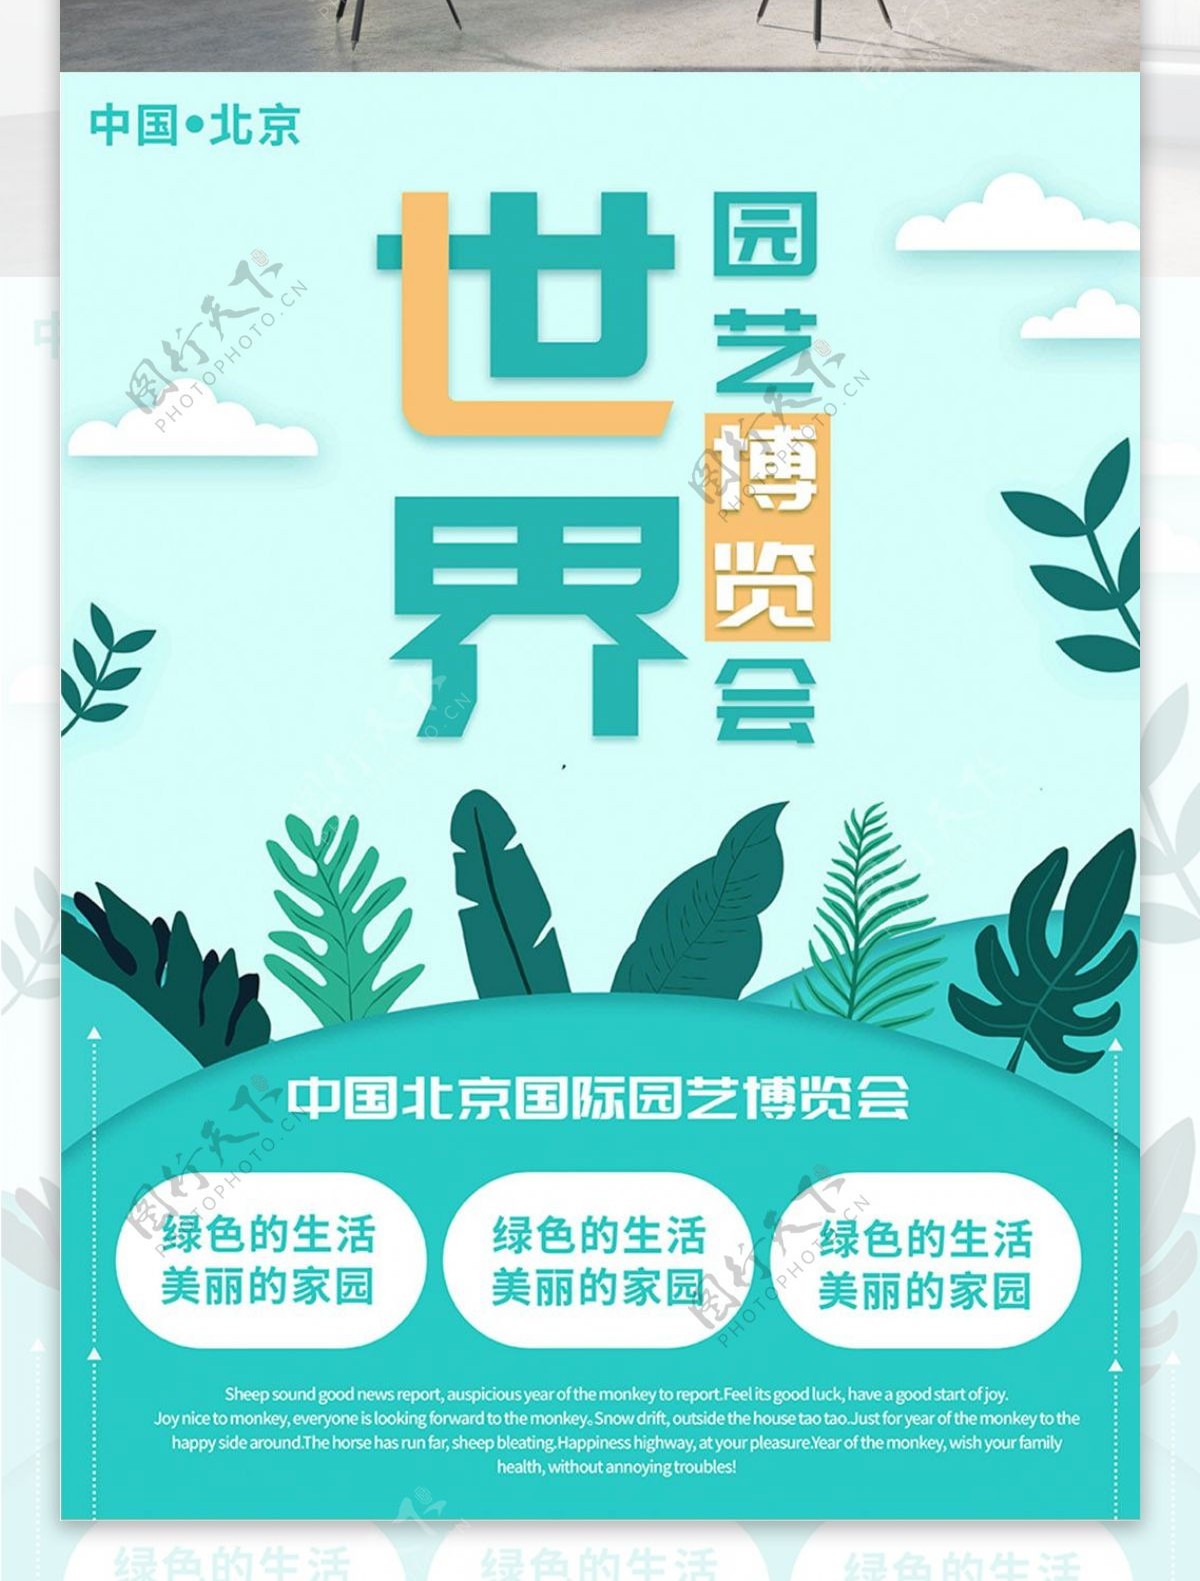 蓝色简约清新北京世界园艺博览会宣传海报